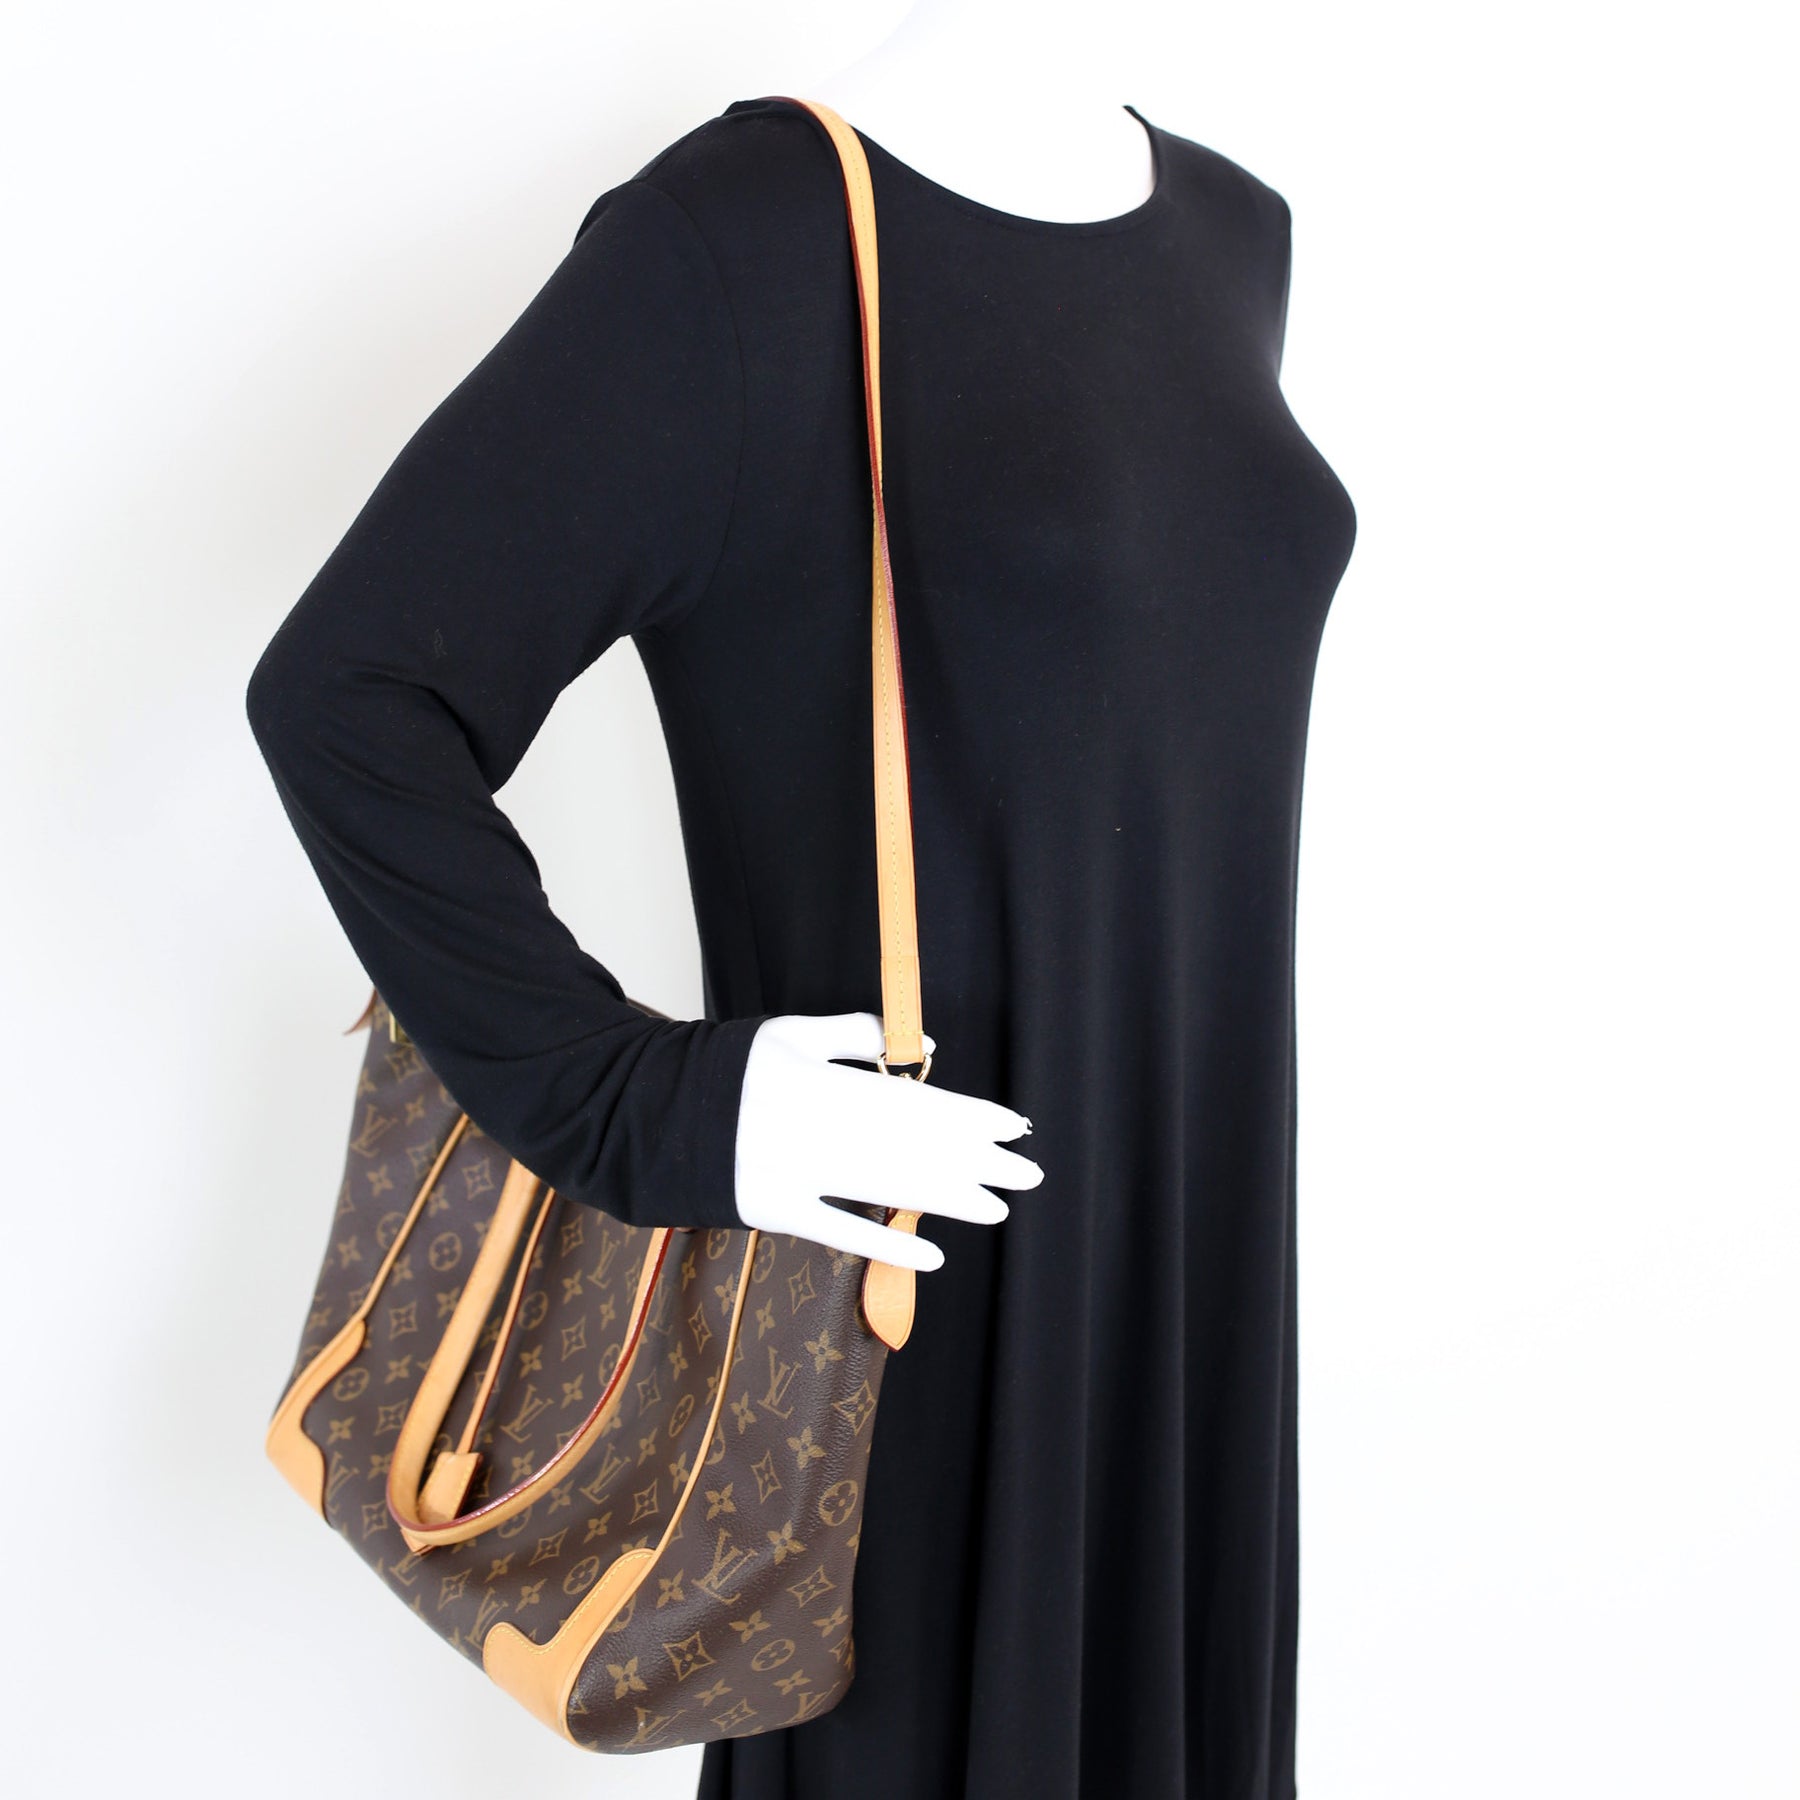 Pre-owned Louis Vuitton Monogram Estrela NM Bag – Sabrina's Closet